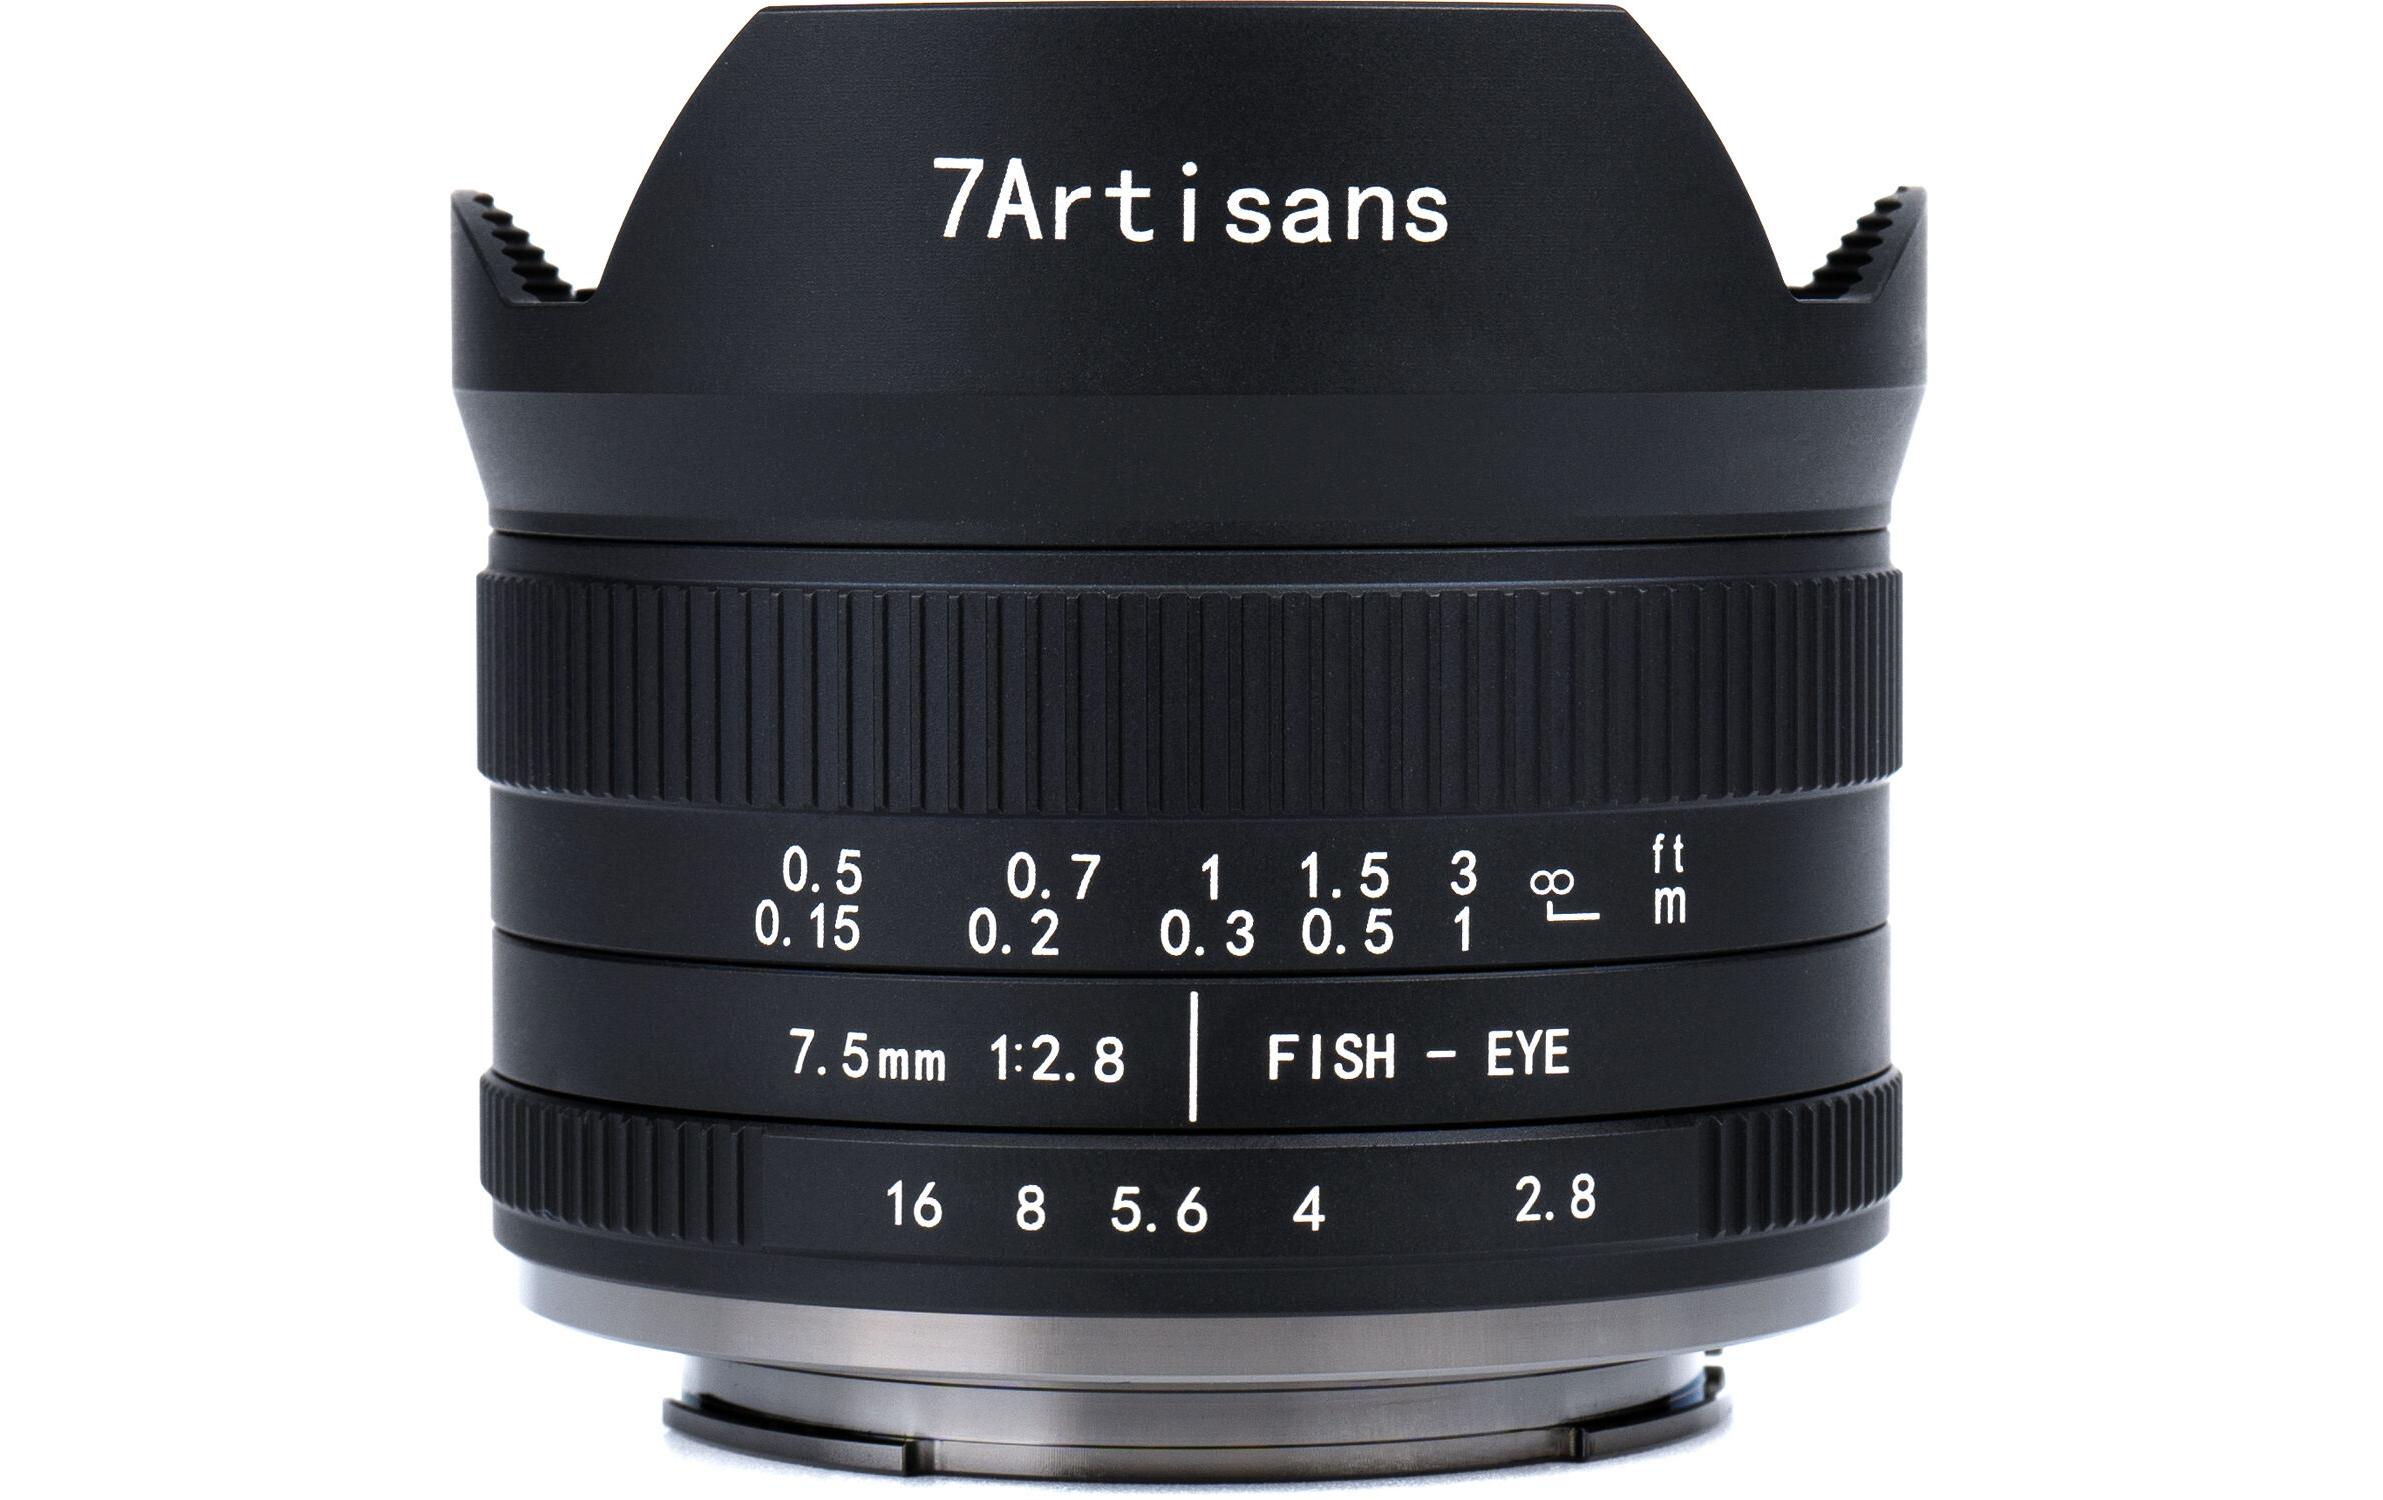 7Artisans Festbrennweite 7.5mm F/2.8 Fisheye Mark II – Nikon Z